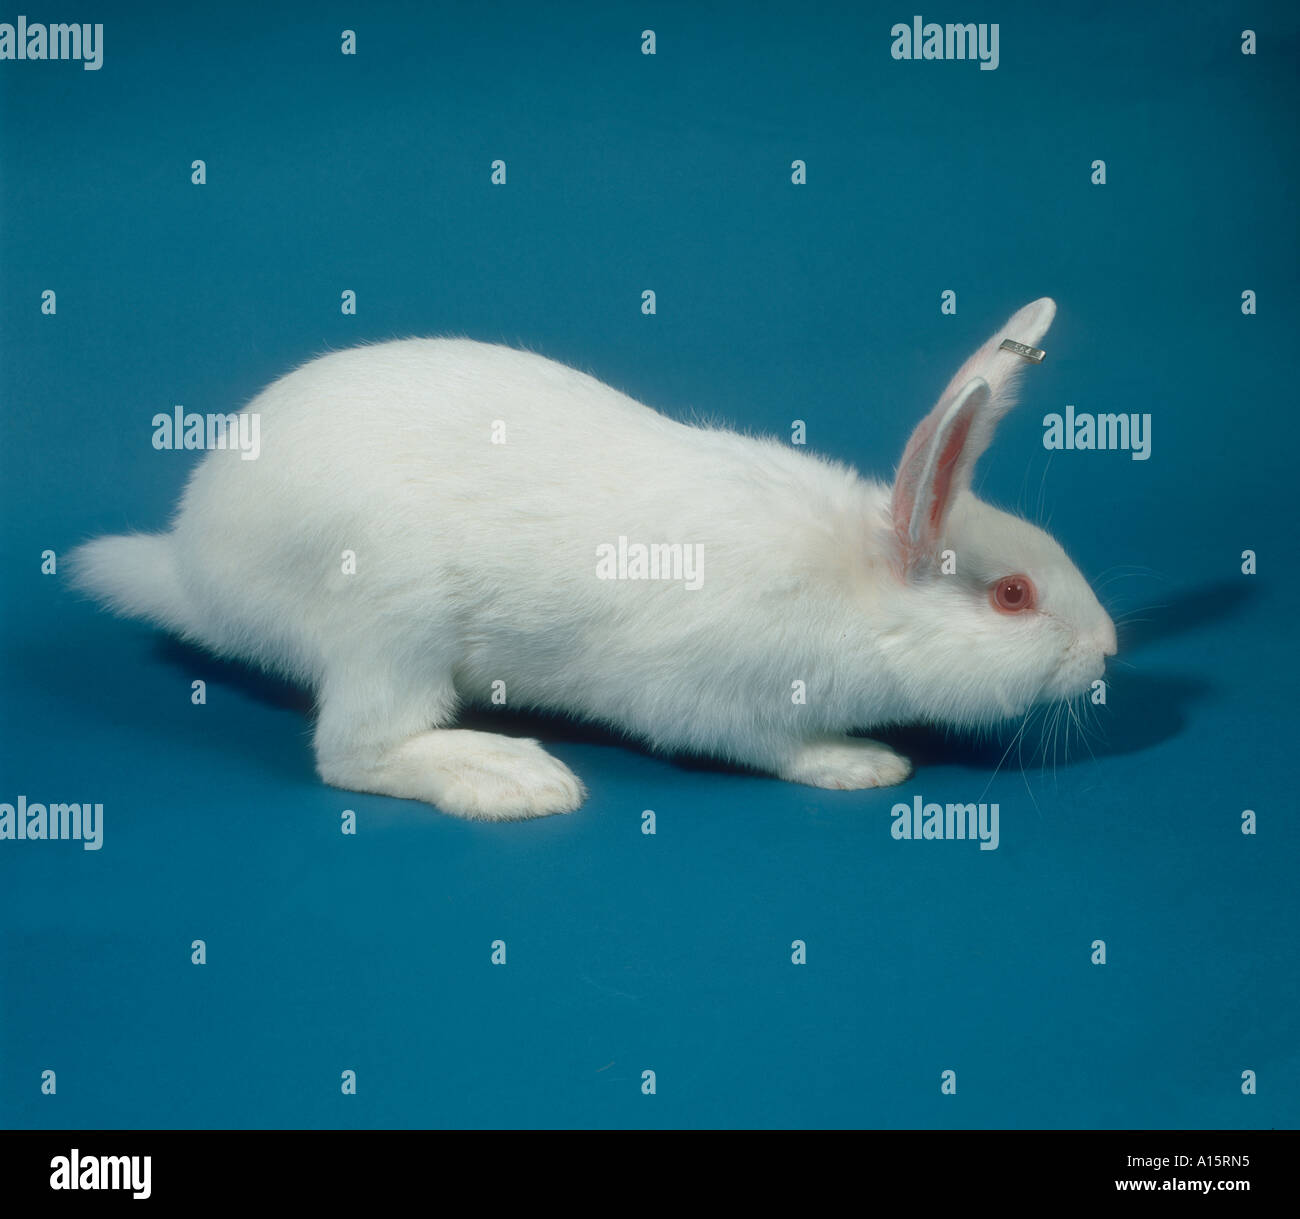 Un livre blanc de la recherche en laboratoire race de lapin blanc de Nouvelle- Zélande Banque D'Images